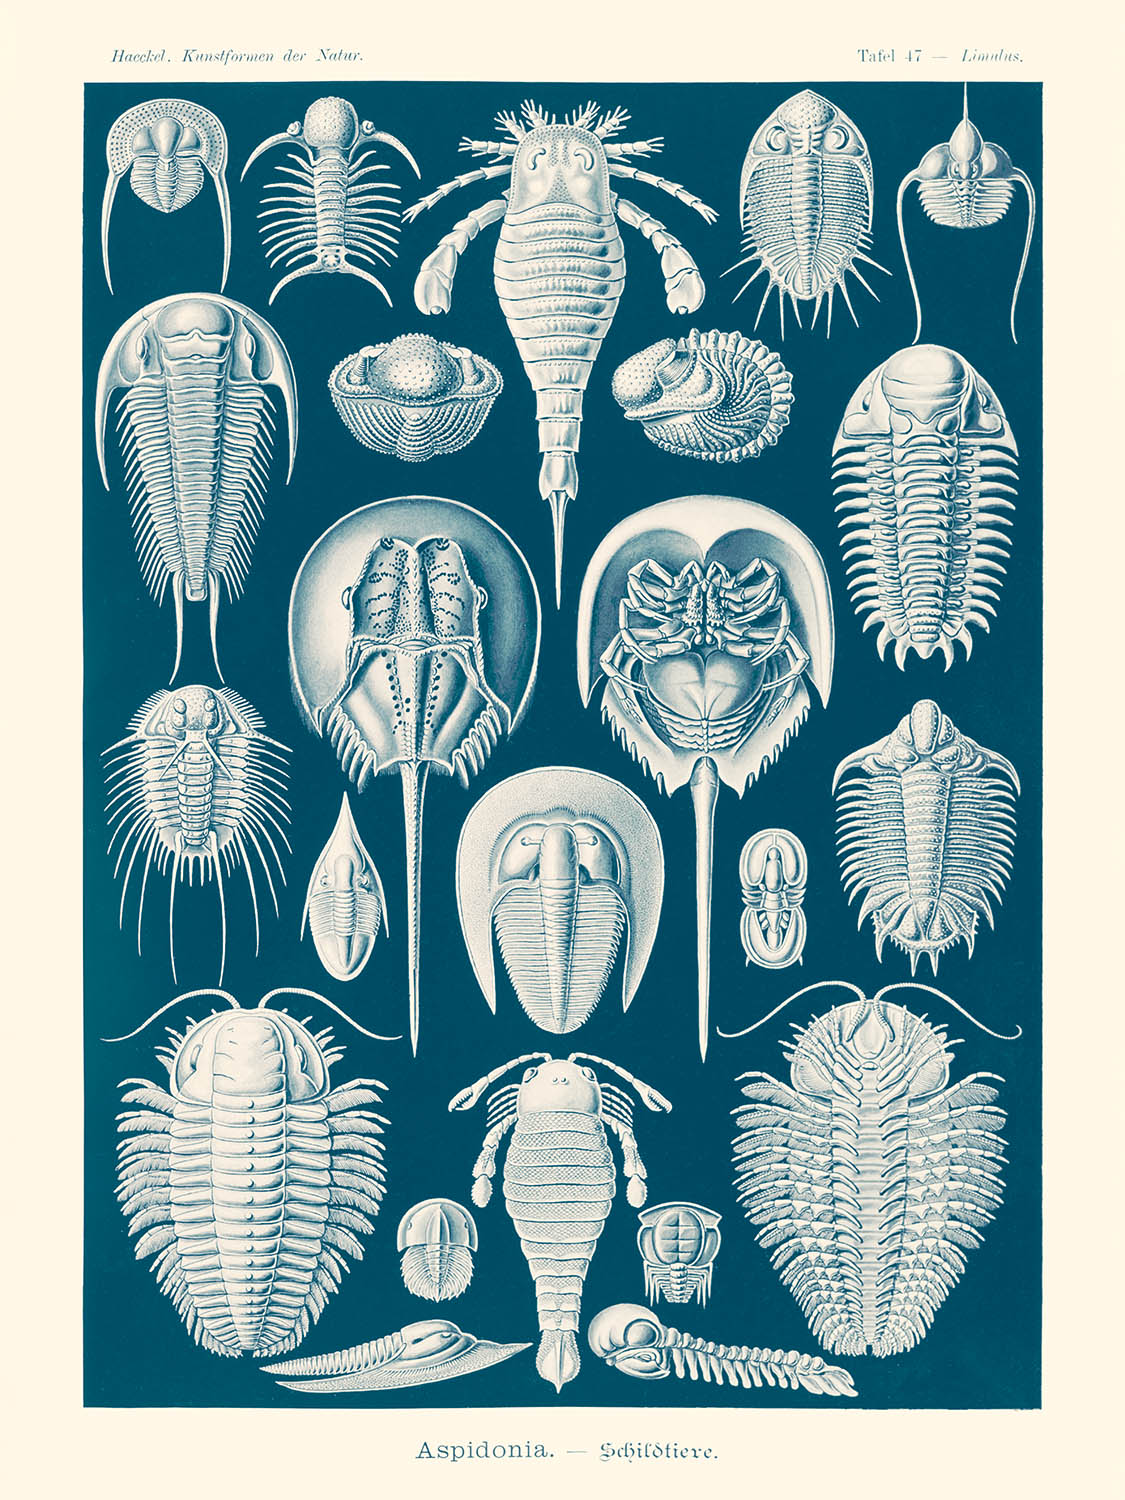 Horseshoe Crab (Aspidonia Schildtiere) by Ernst Haeckel, 1904